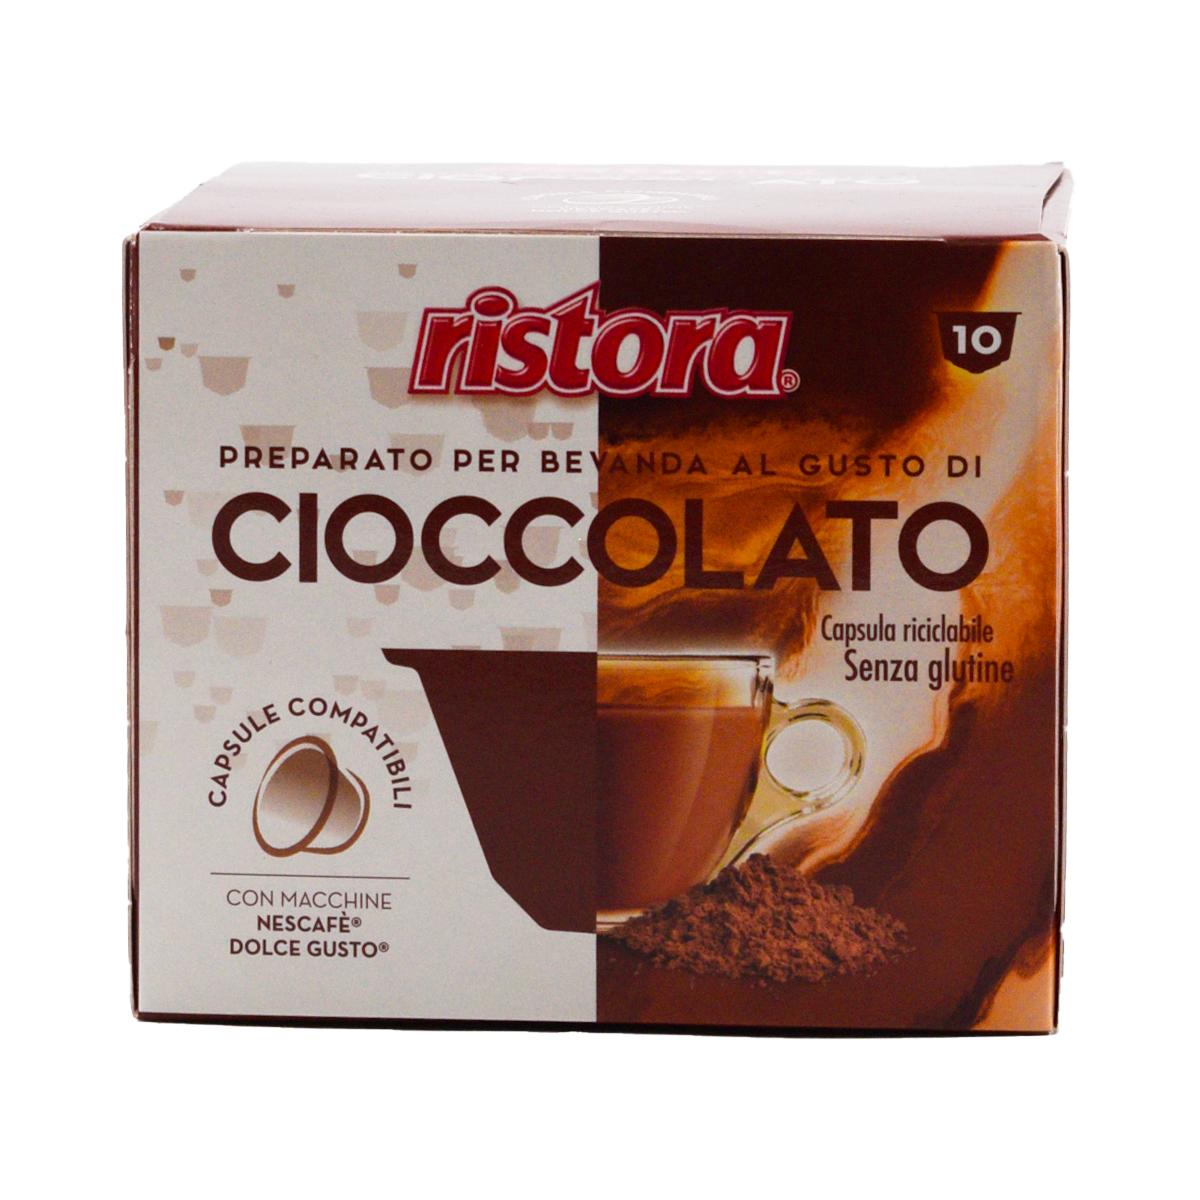 10 capsule Ristora comp. Dolce Gusto cioccolato